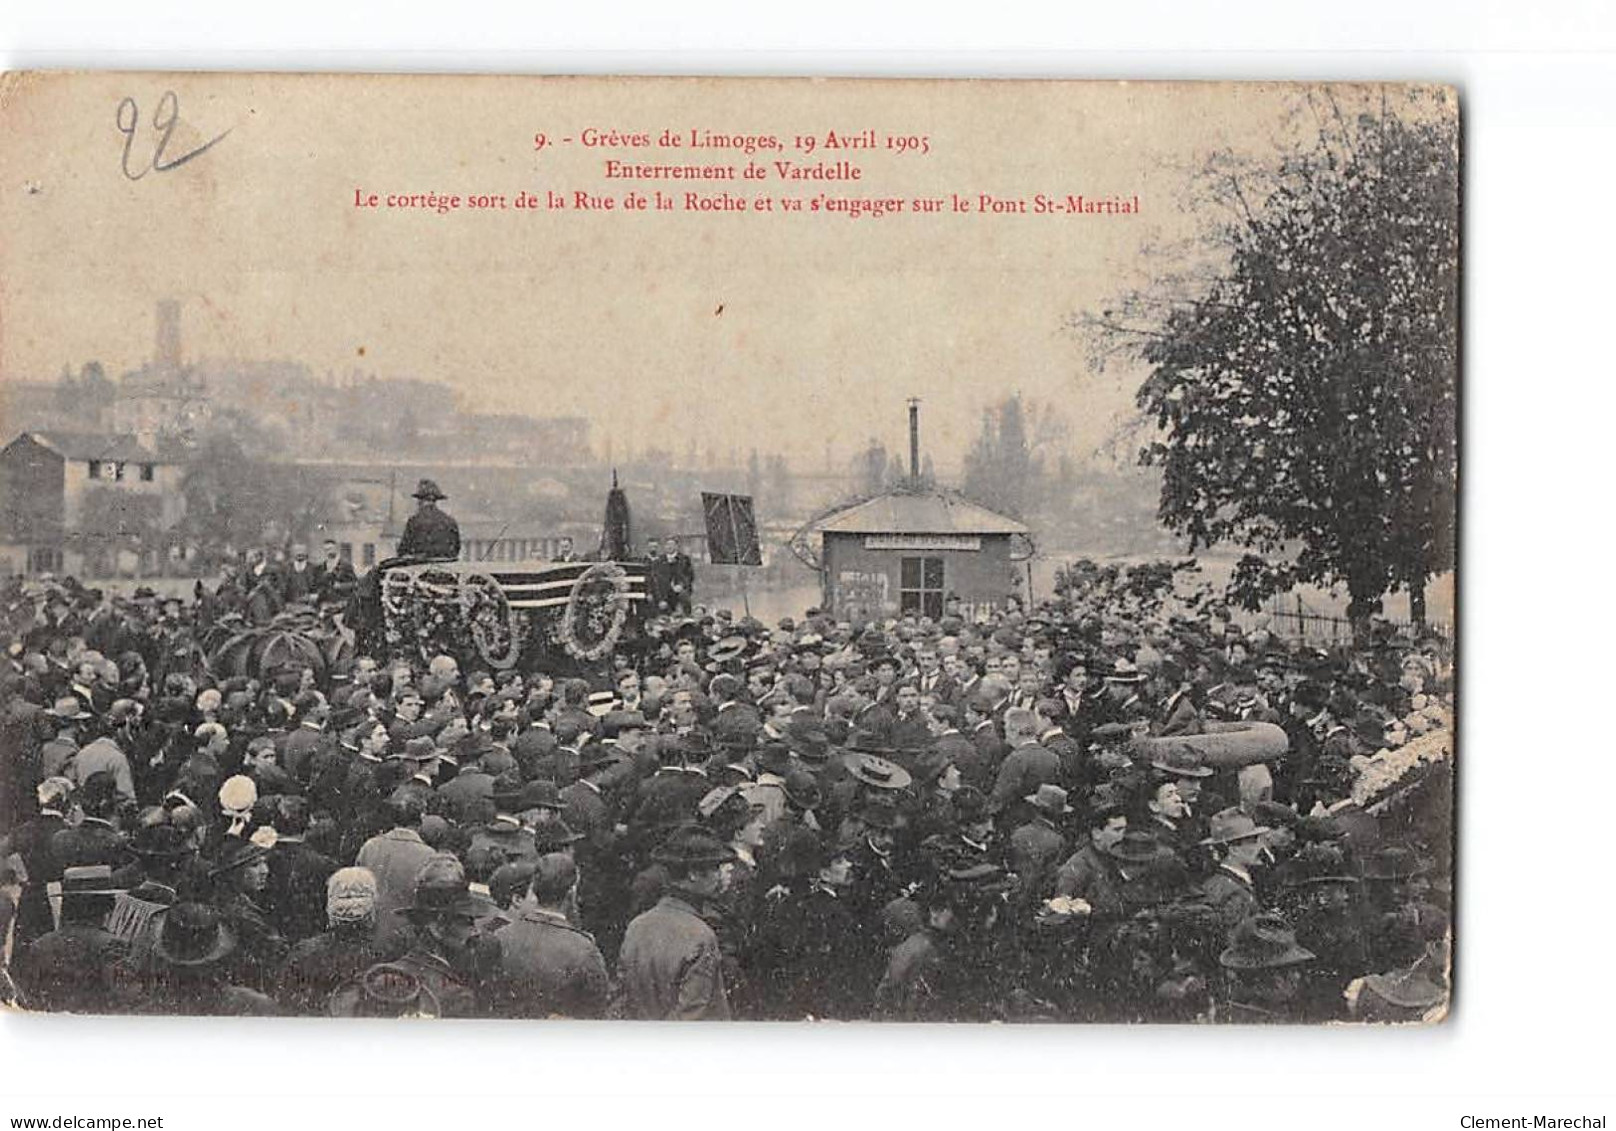 Grèves De LIMOGES - Enterrement De Vardelle - Le Cortège - 19 Avril 1905 - état - Limoges